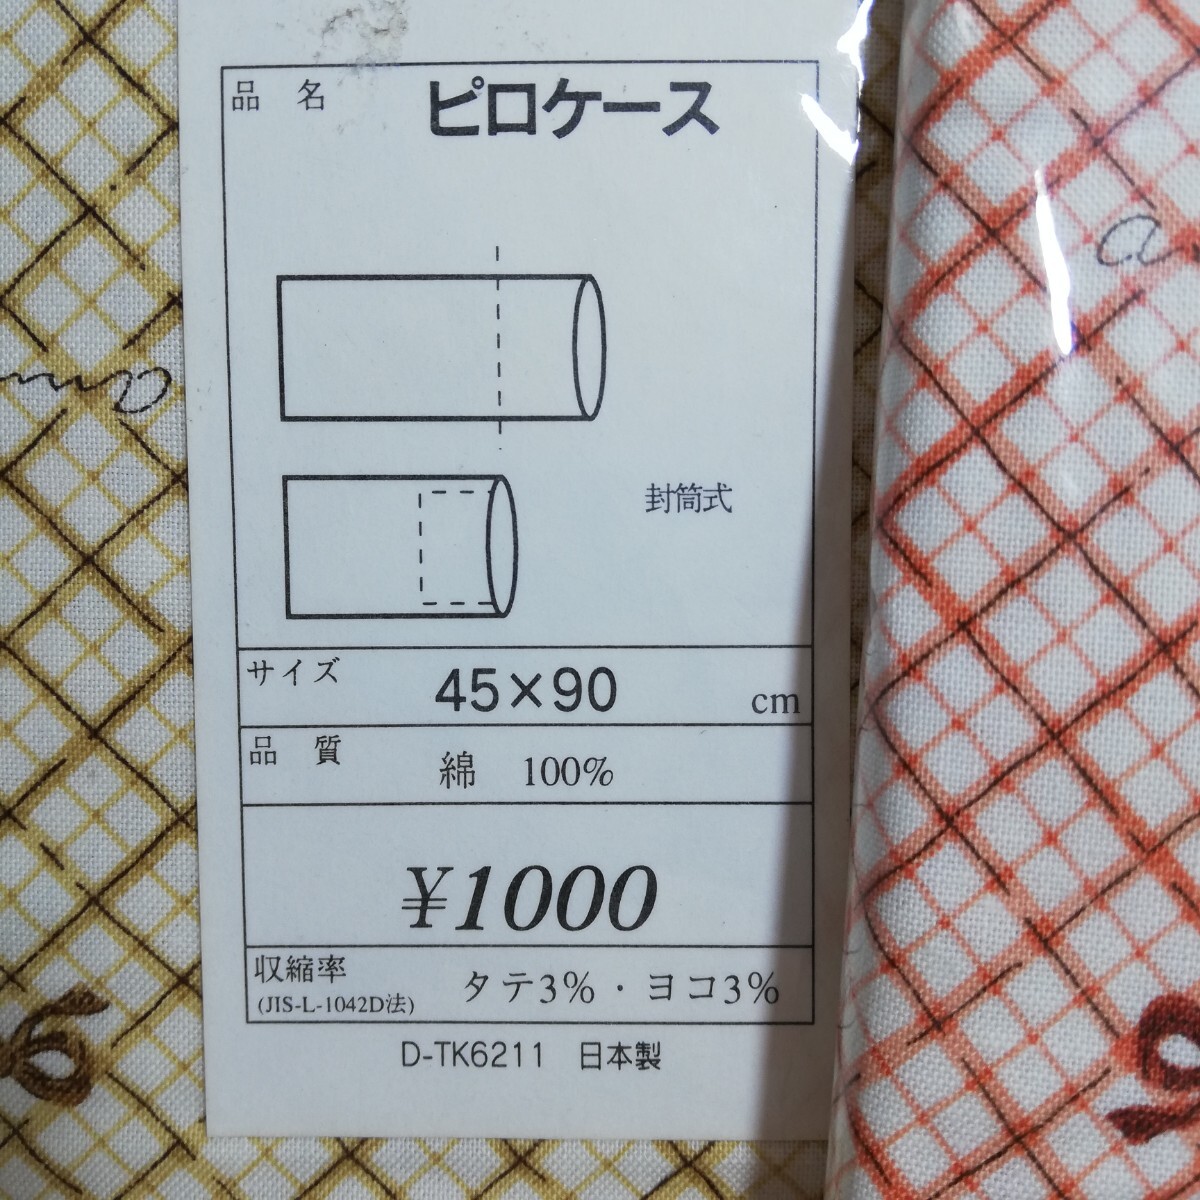 Fabricing リボンクロス柄 ピロケース 枕カバー イエロー・オレンジ 45cm×90cm 2点セット 未使用品 日本製 の画像4